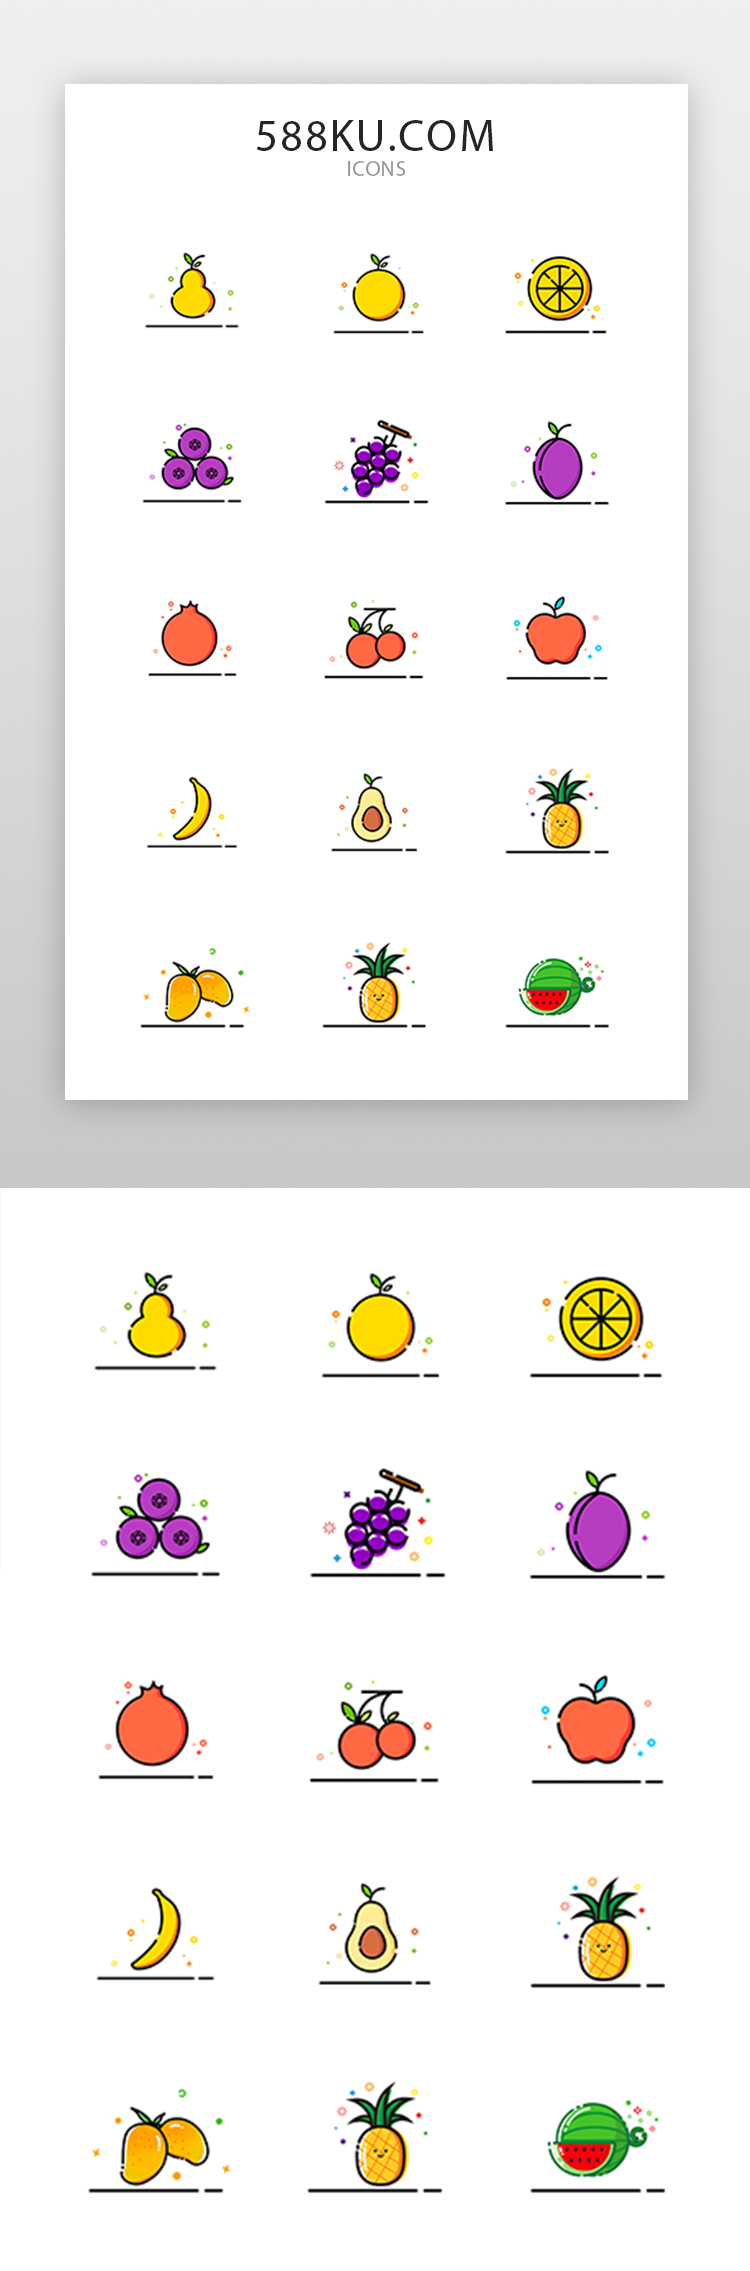 翻新水果图标 图标MBE纯色水果图片